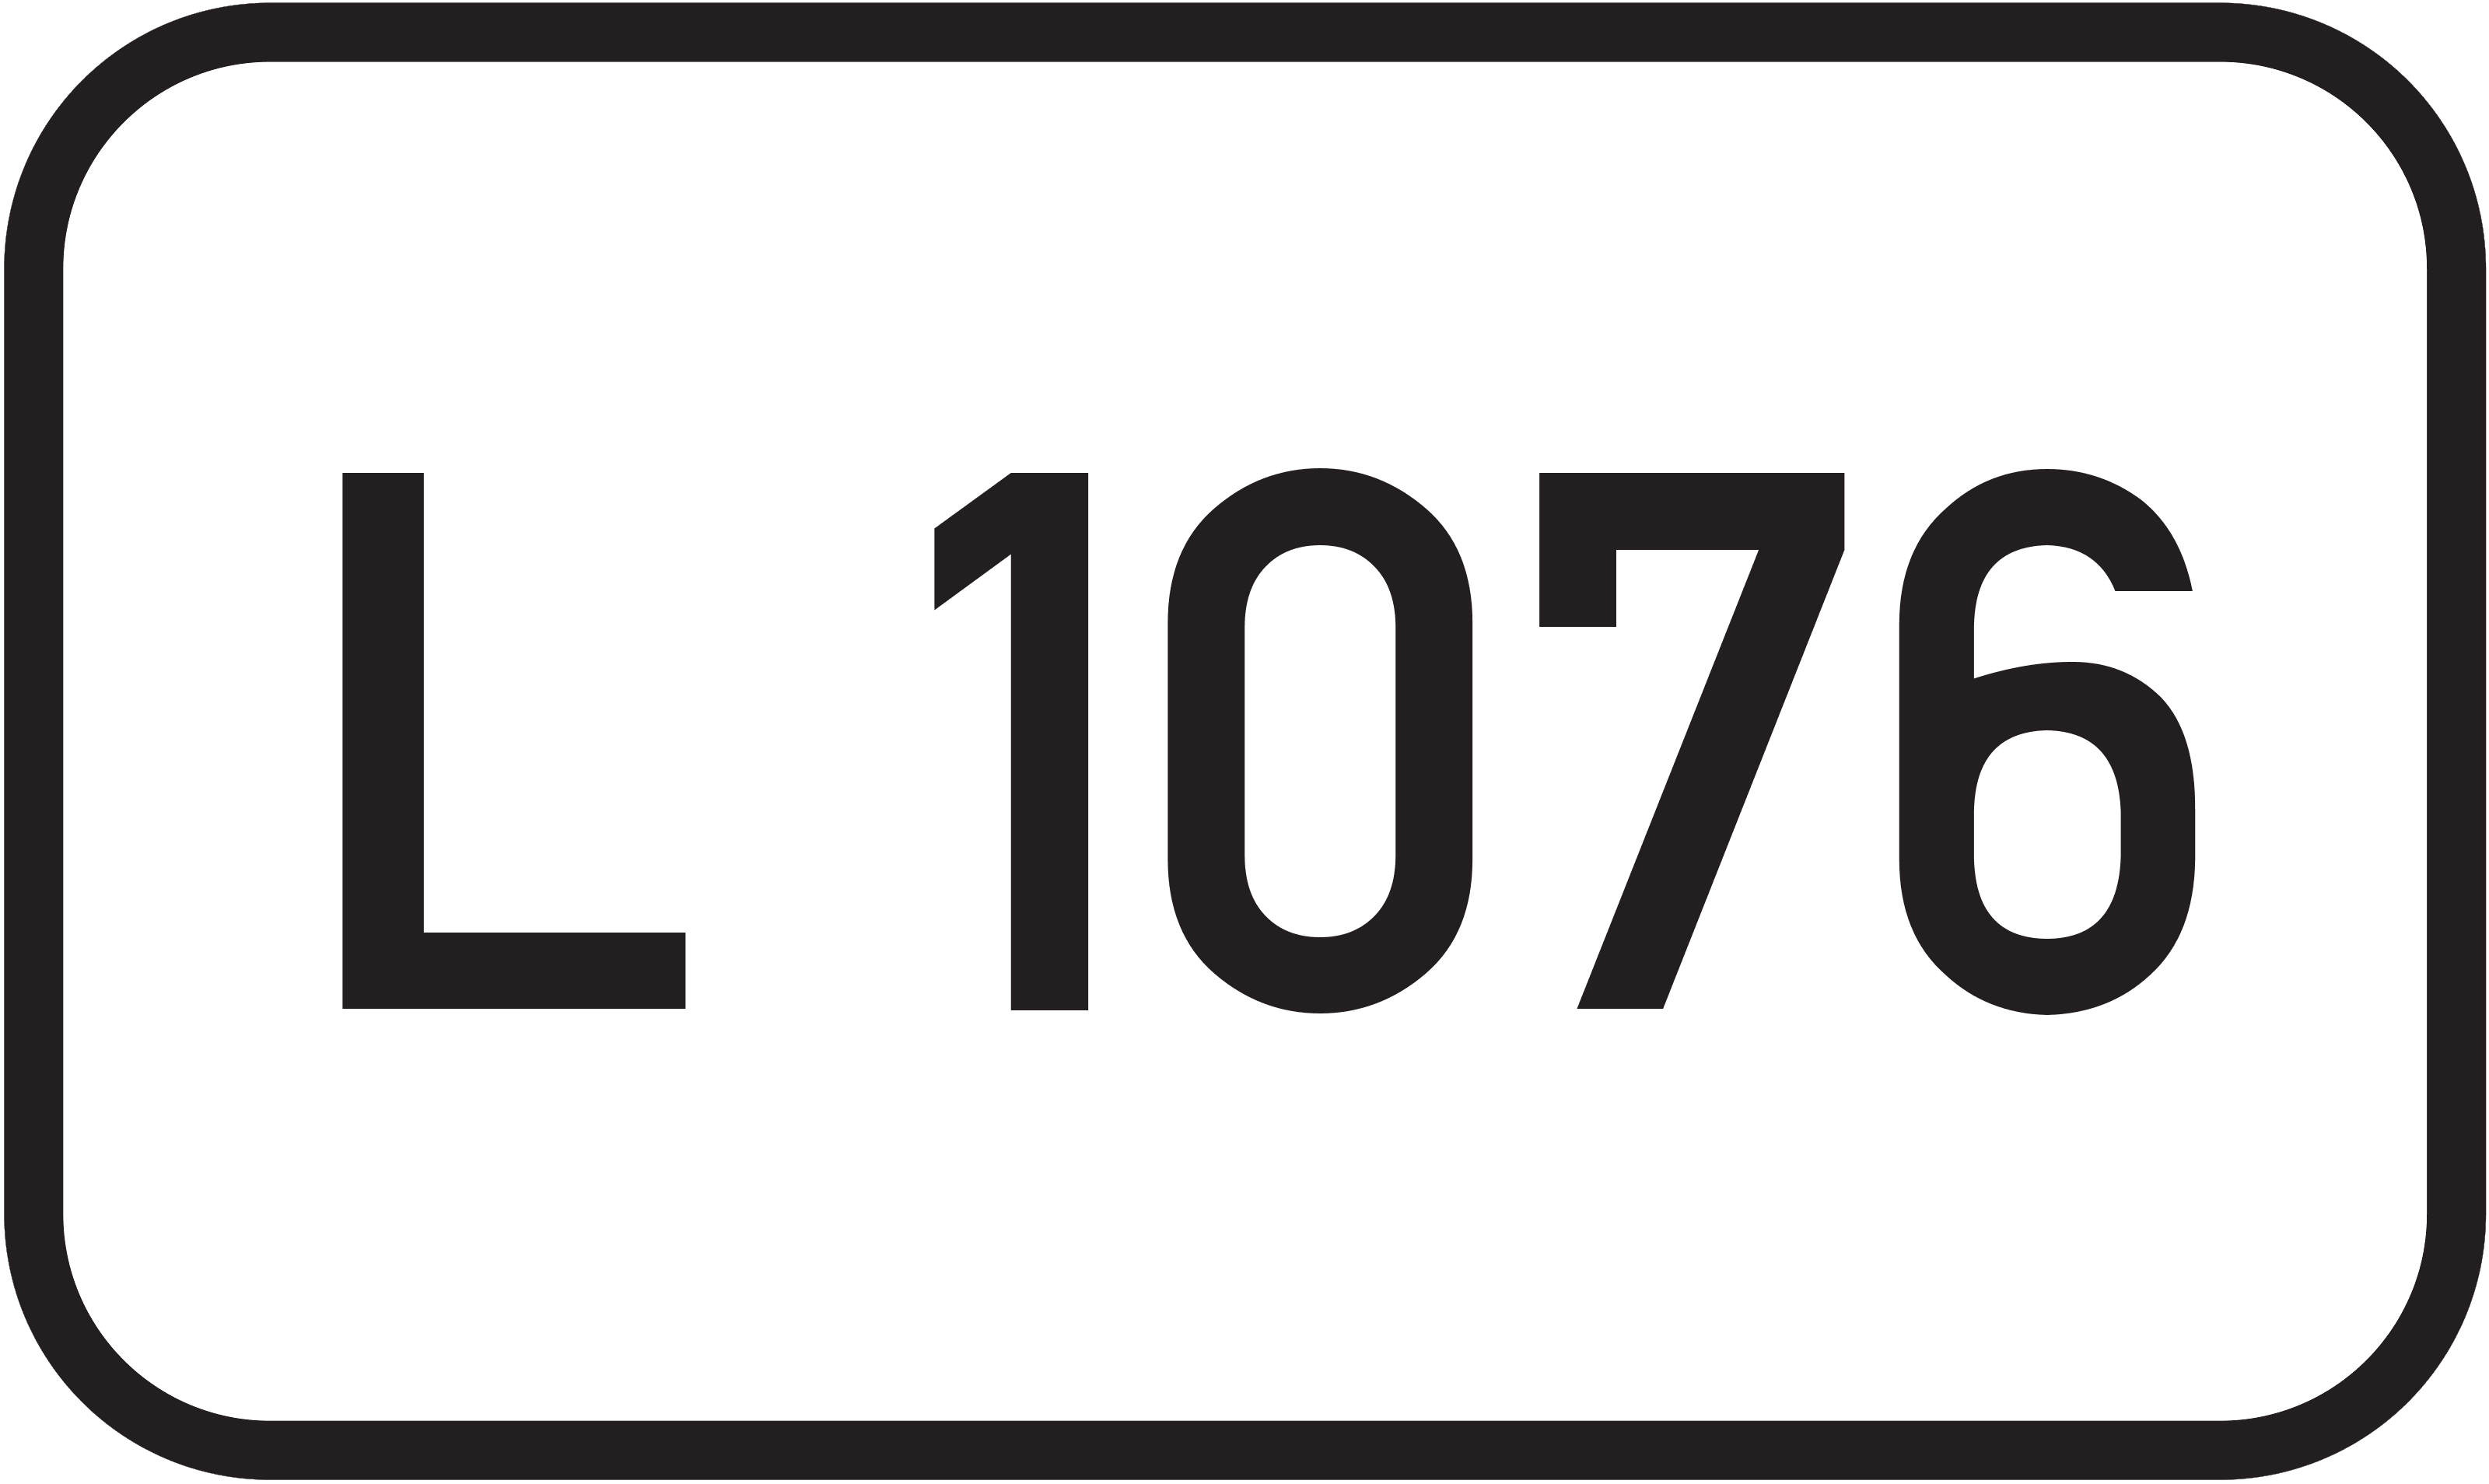 Landesstraße L 1076